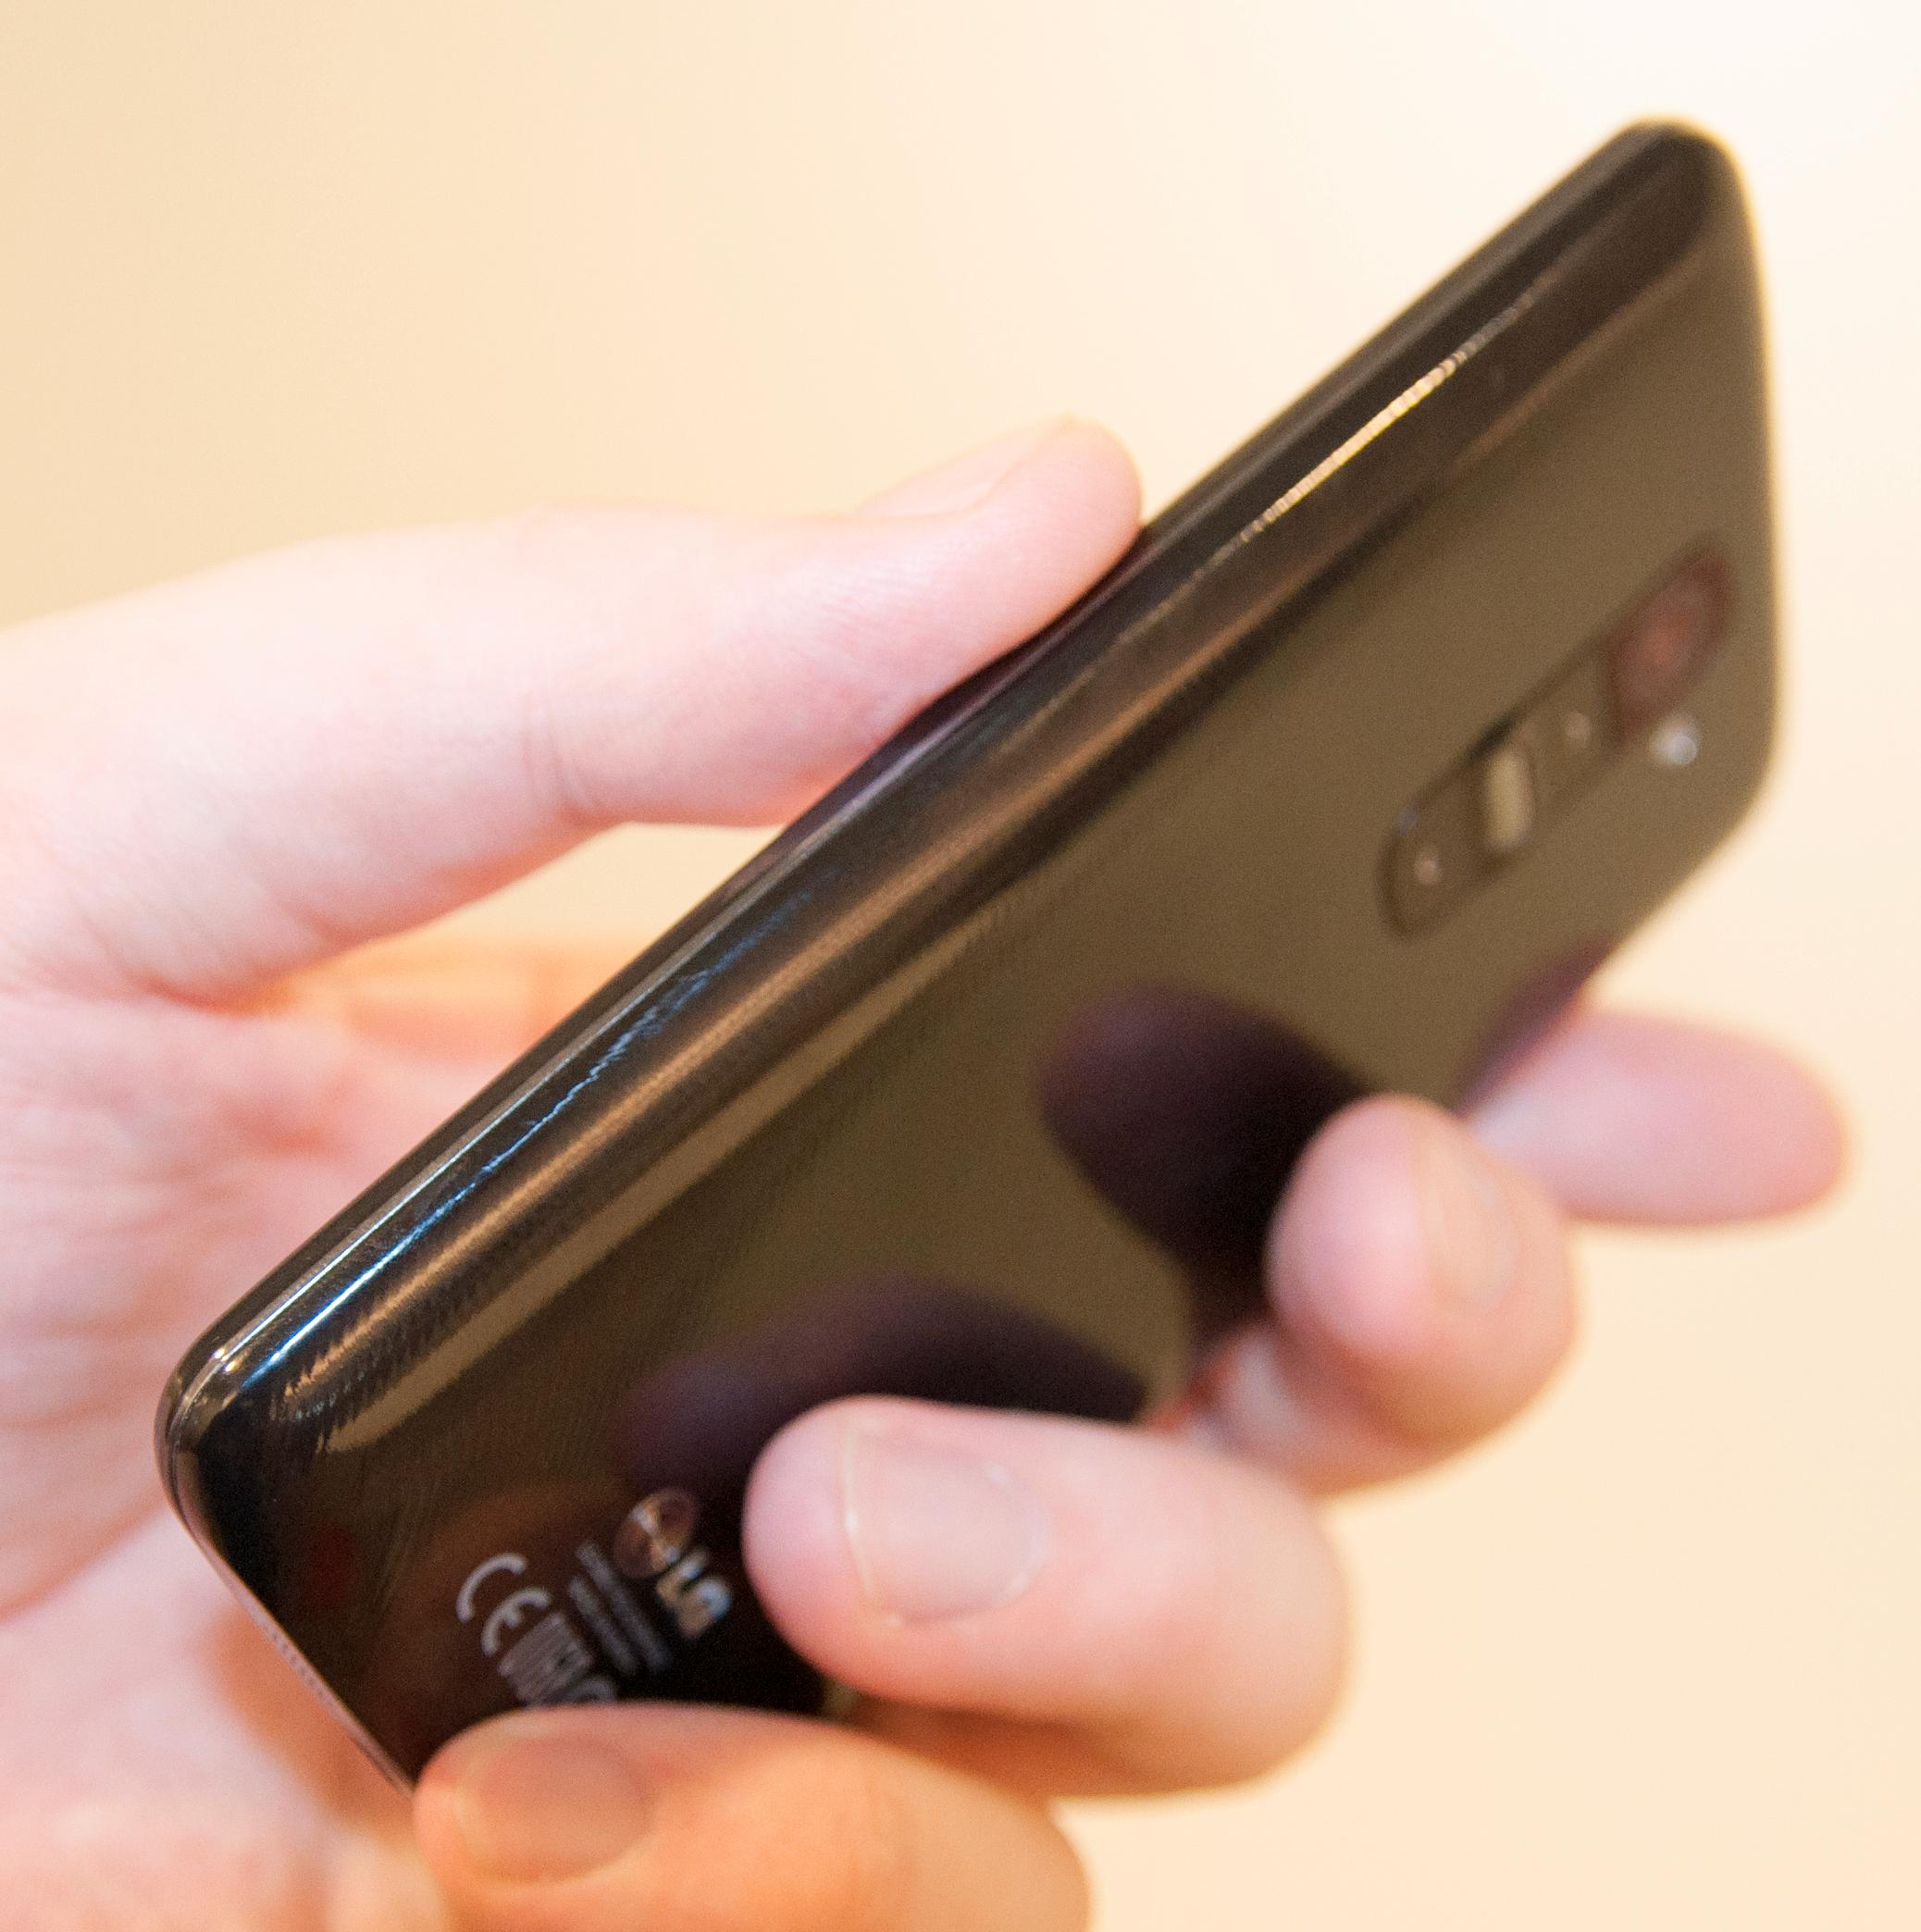 LG G2 er ren og pen i designen. Den har ingen fysiske knapper på forsiden eller langs sidene.Foto: Finn Jarle Kvalheim, Amobil.no